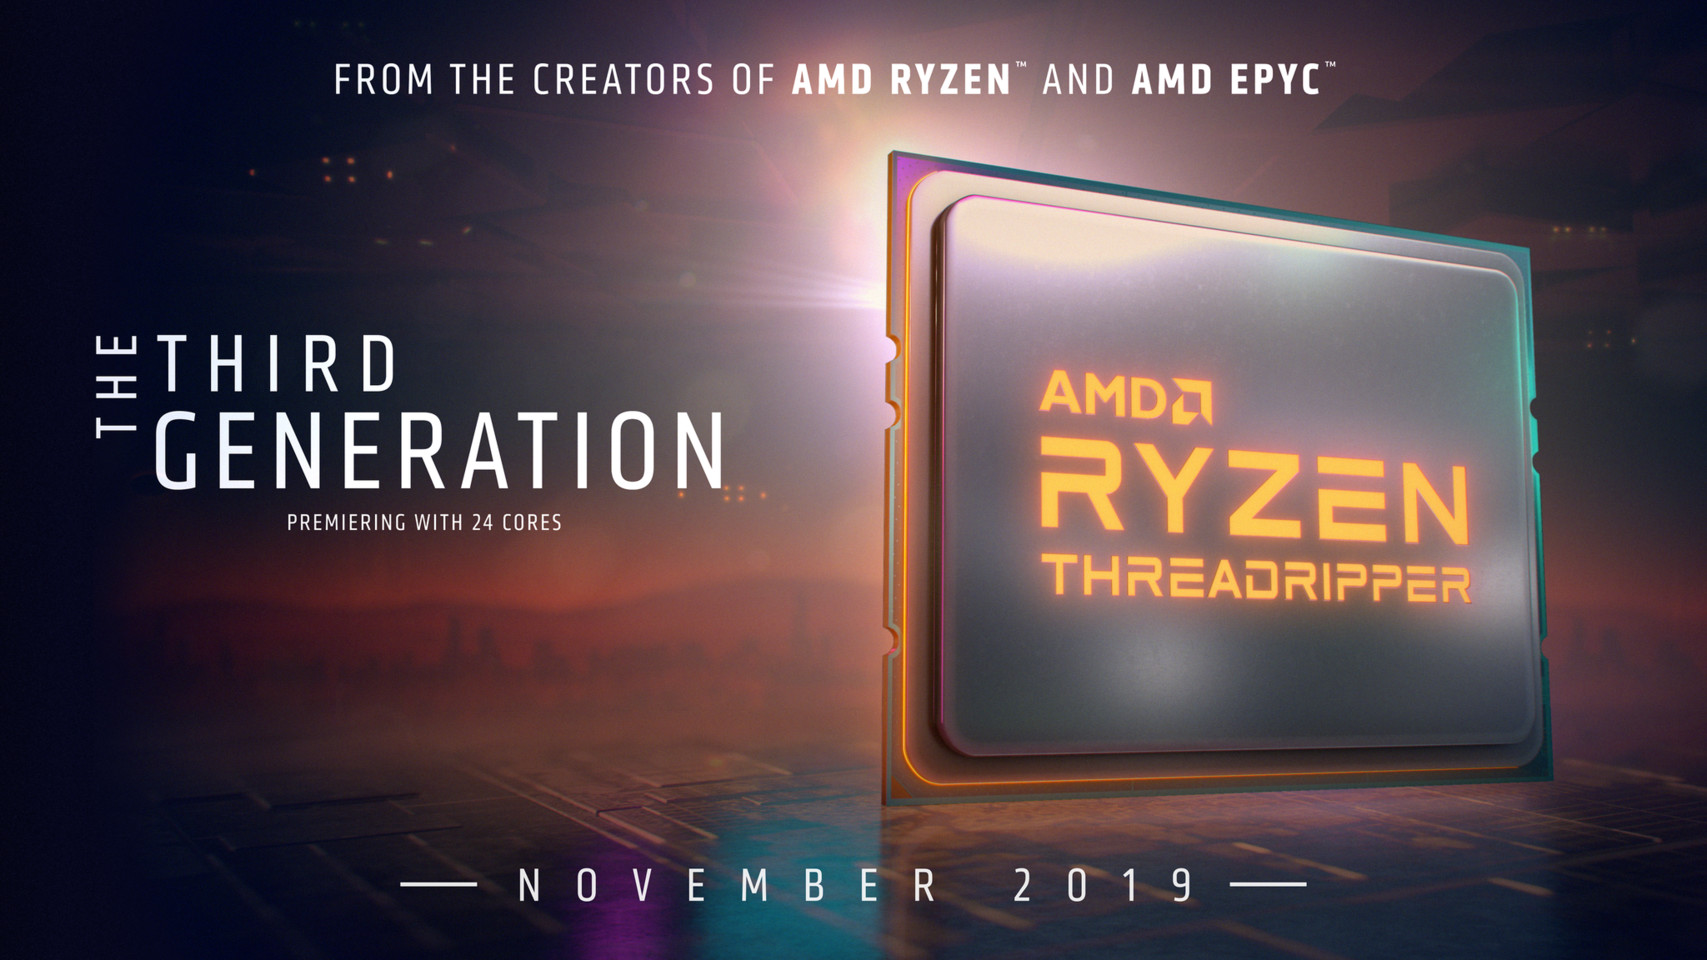 Ra mắt AMD Ryzen Threadripper trong tháng 11 2019